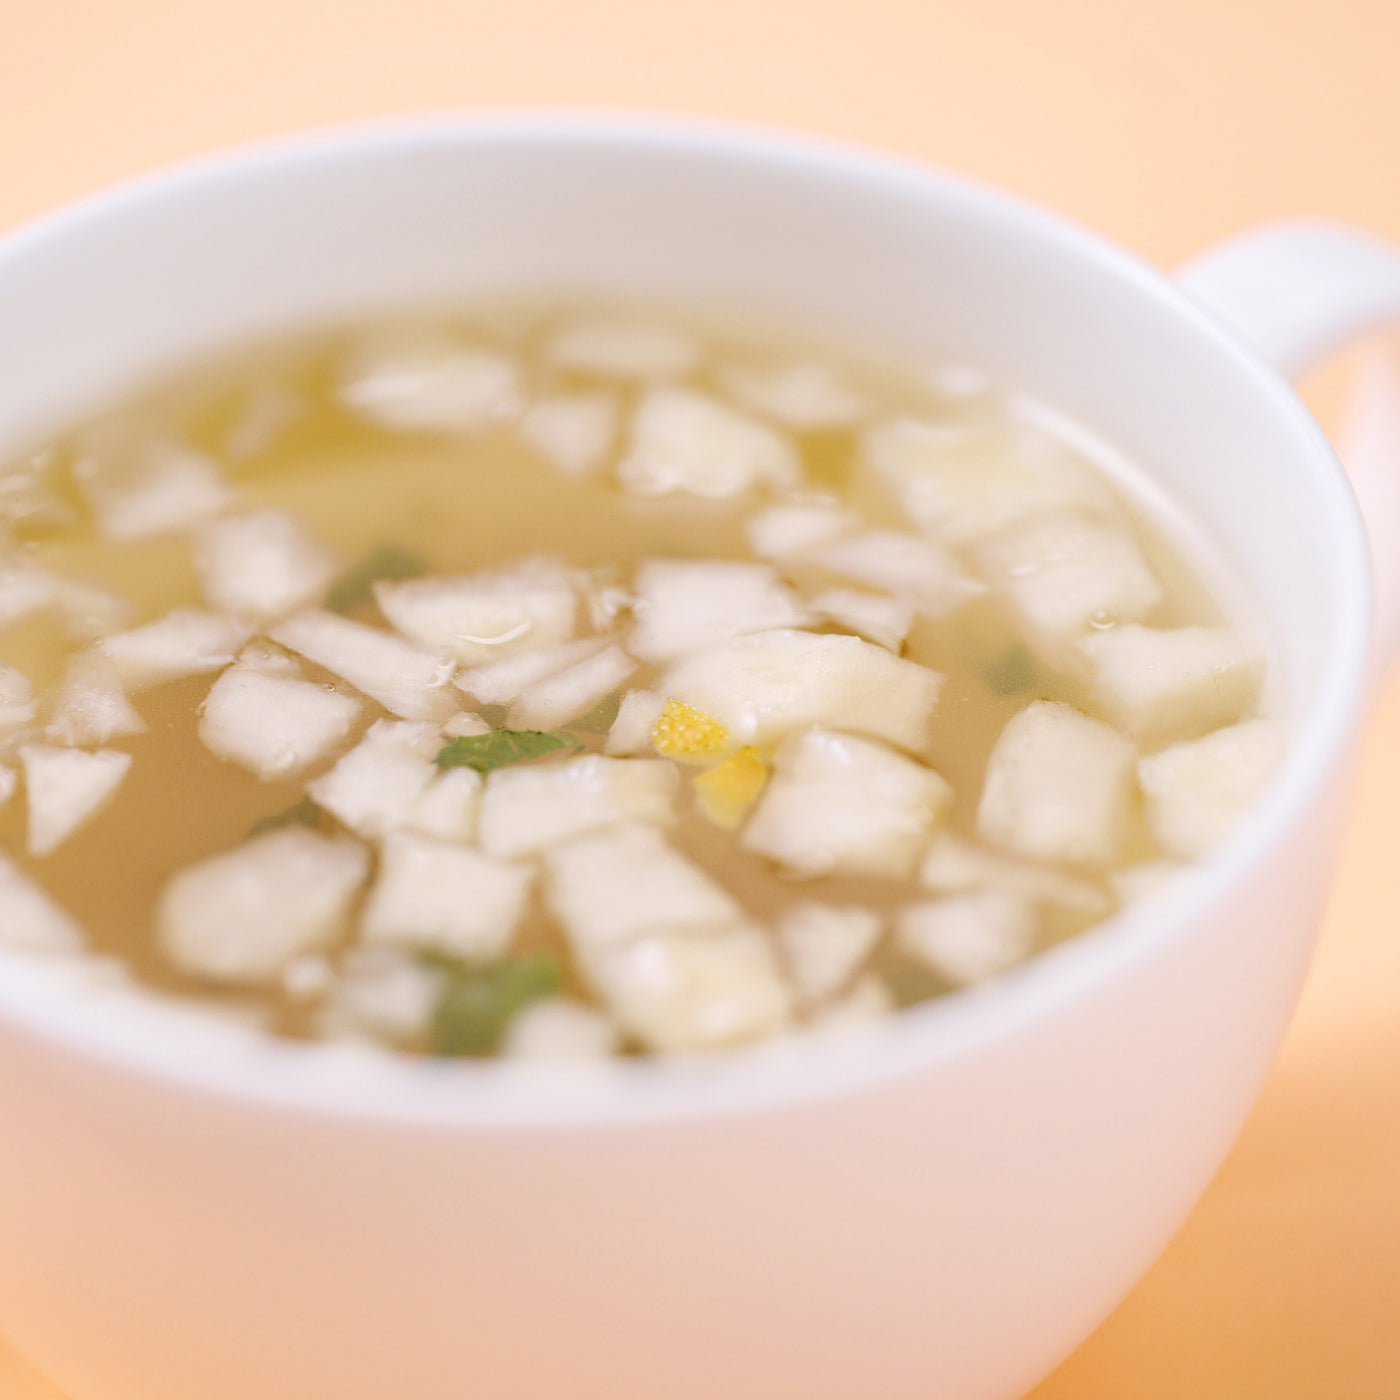 ギフトセット B（スープ全種+お茶 熱・燥）